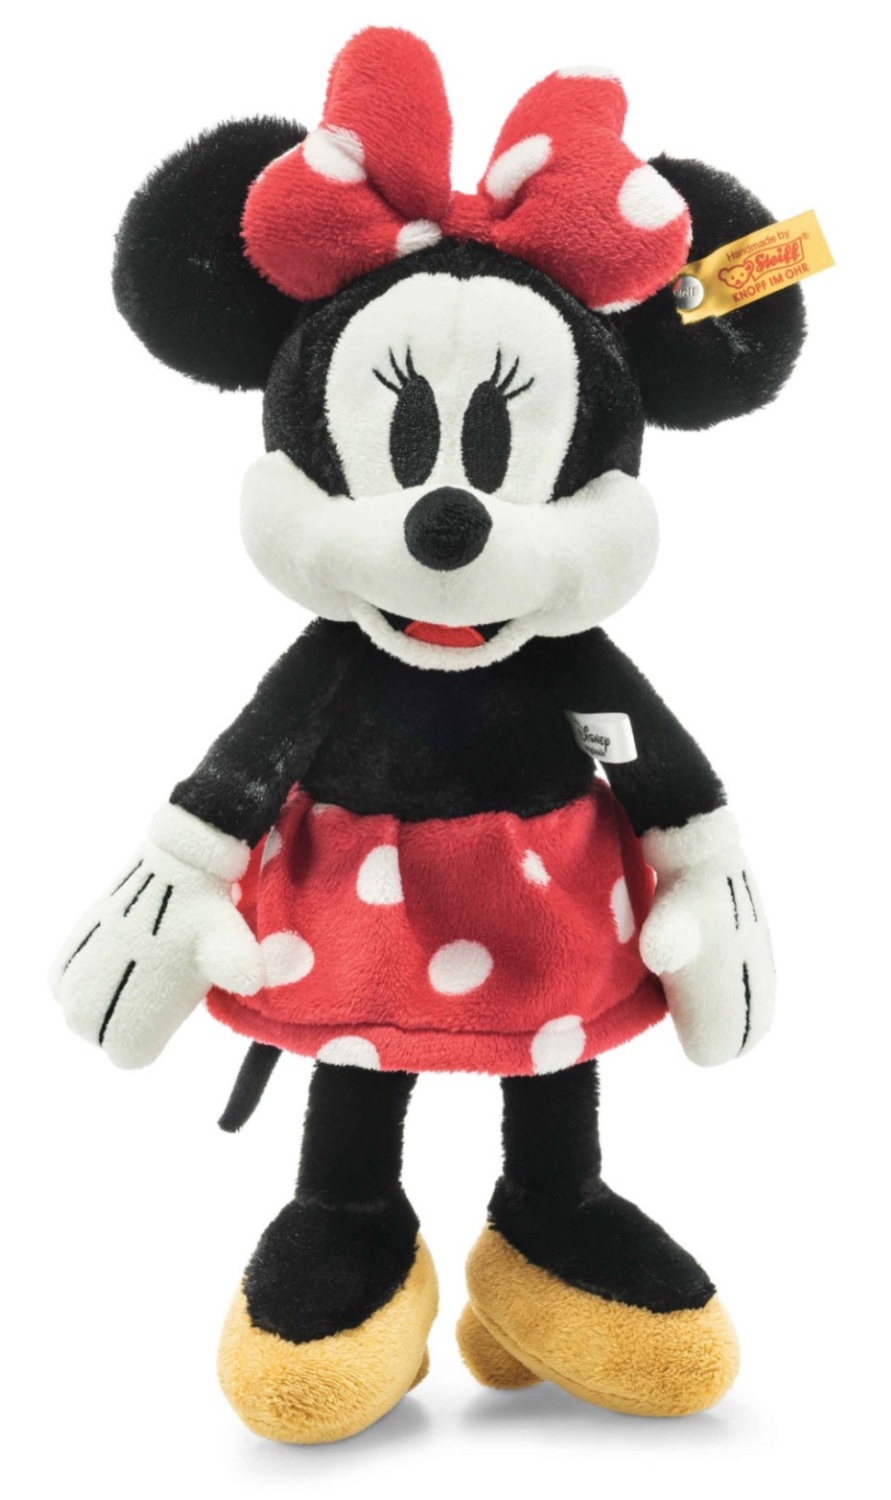 Steiff Soft Cuddly Friends Disney Originals Minnie Mouse